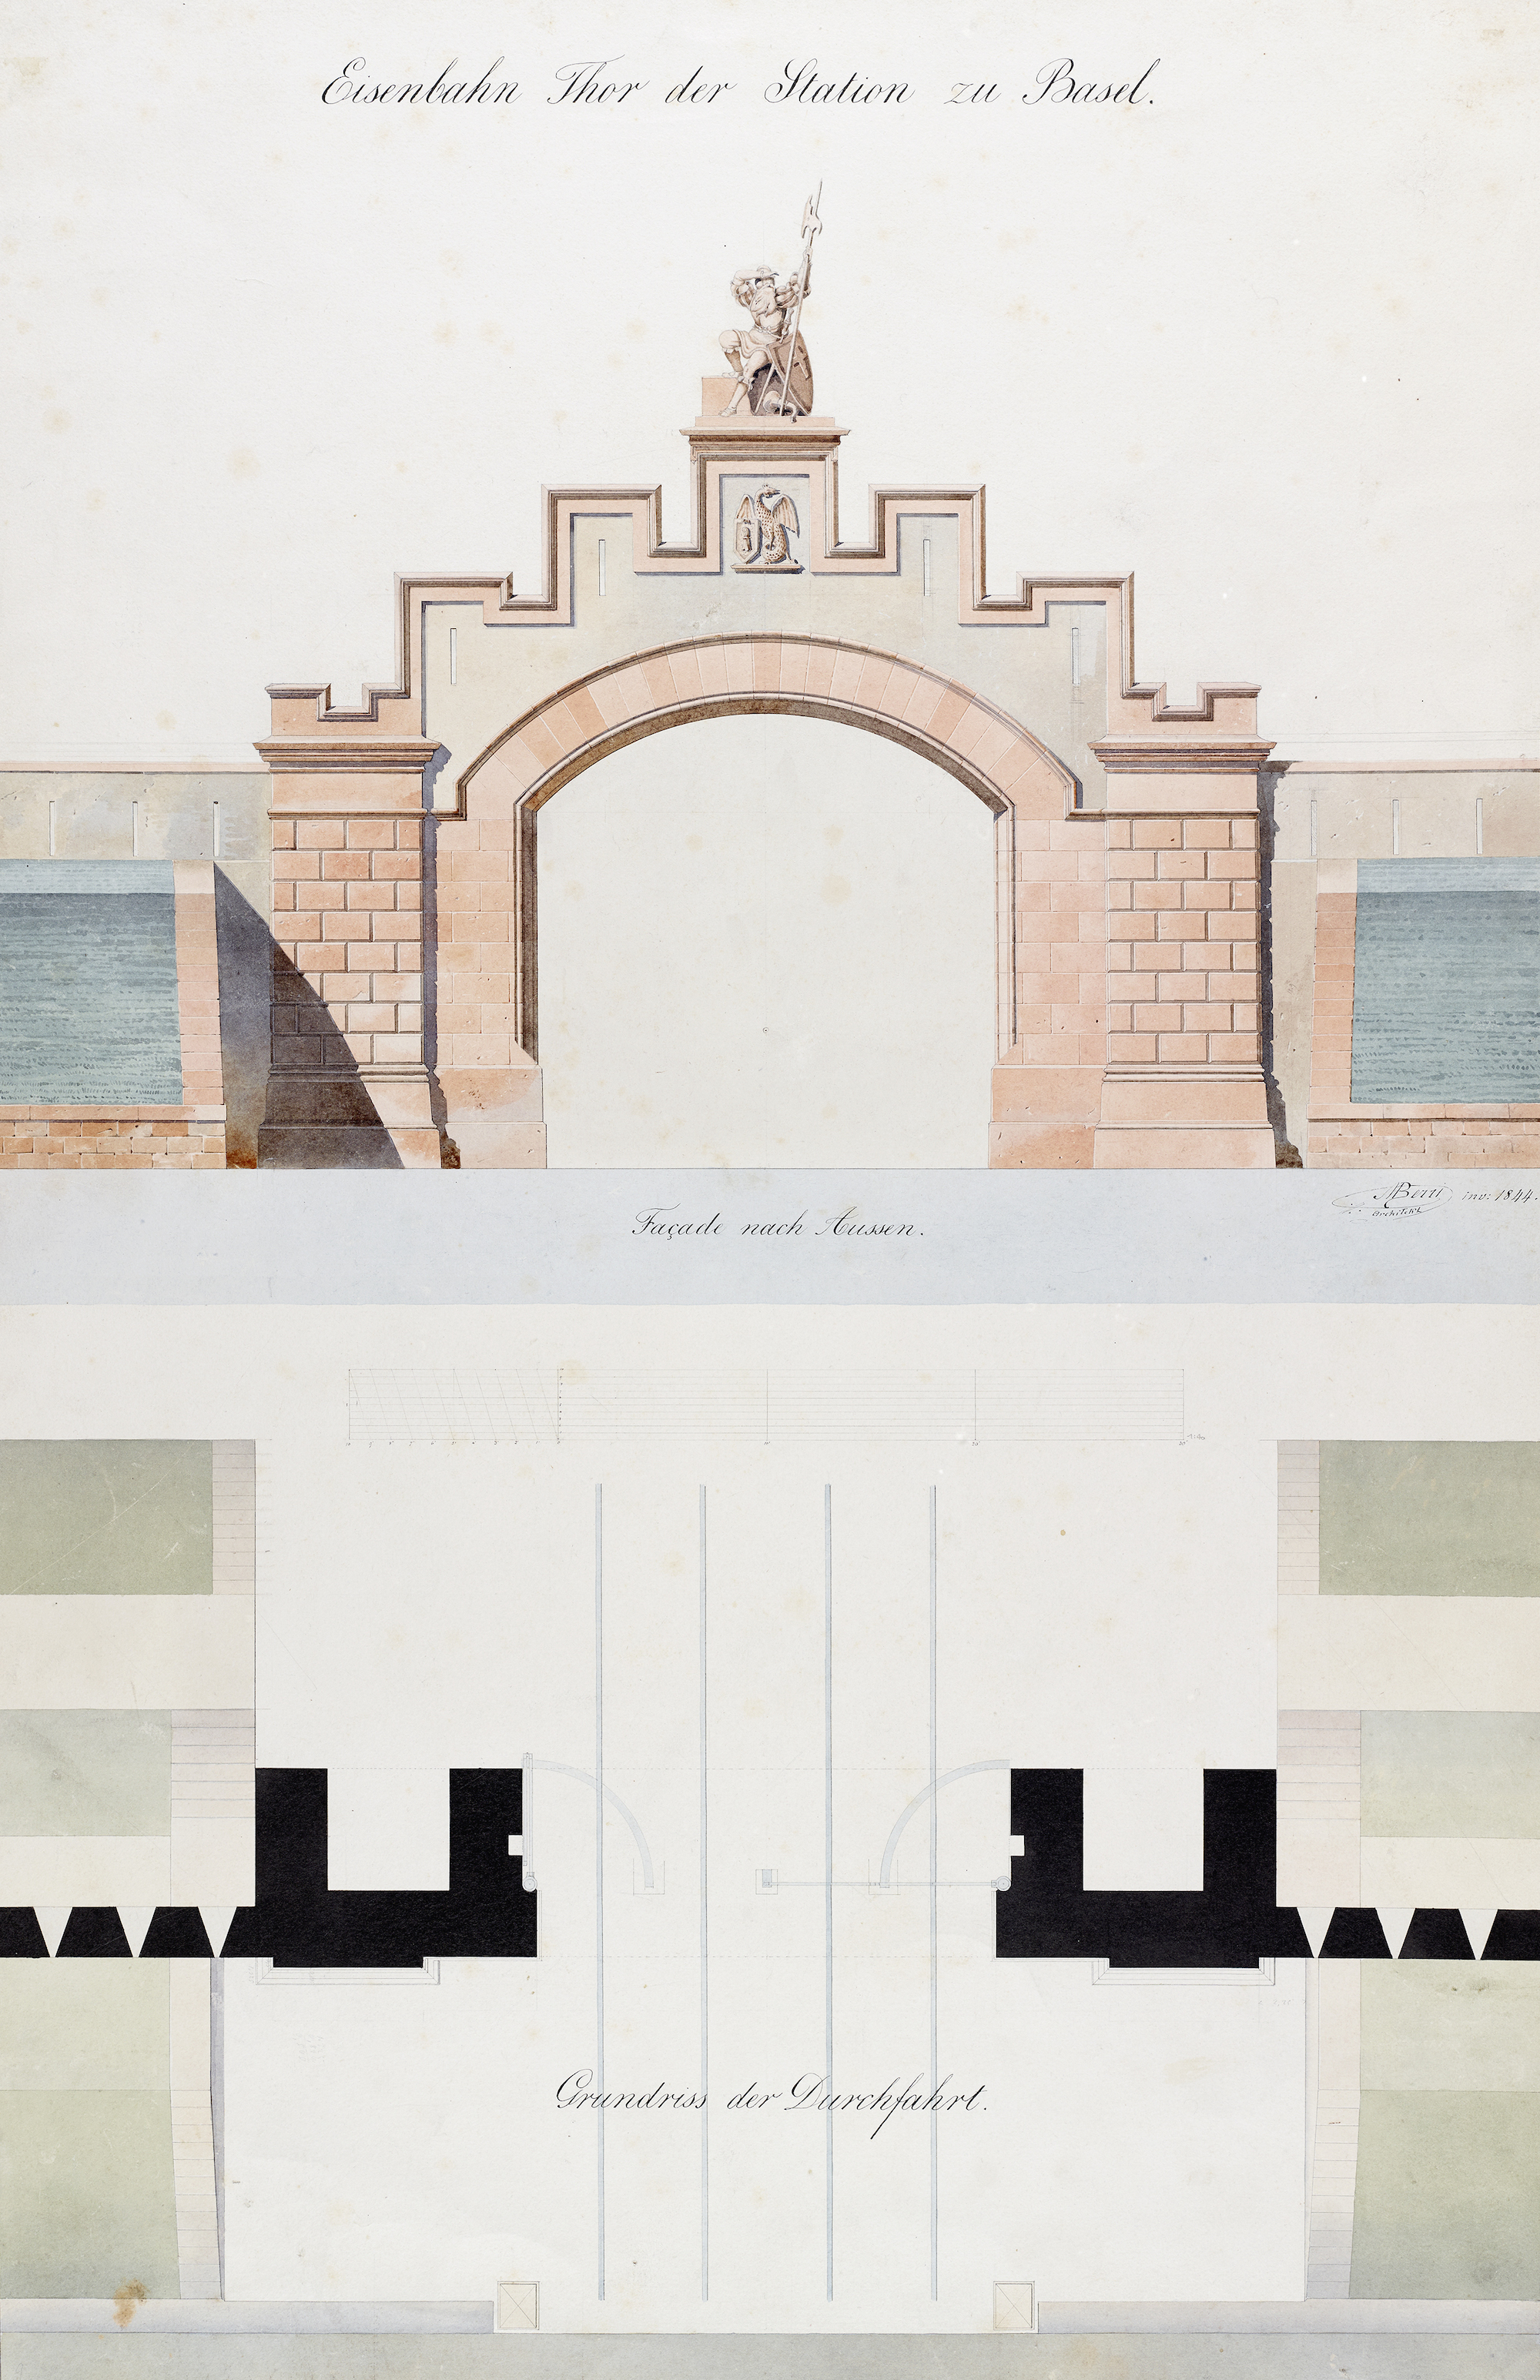 «Eisenbahn Thor der Station zu Basel» – Kolorierter Plan des Architekten Melchior Berr, 1844.